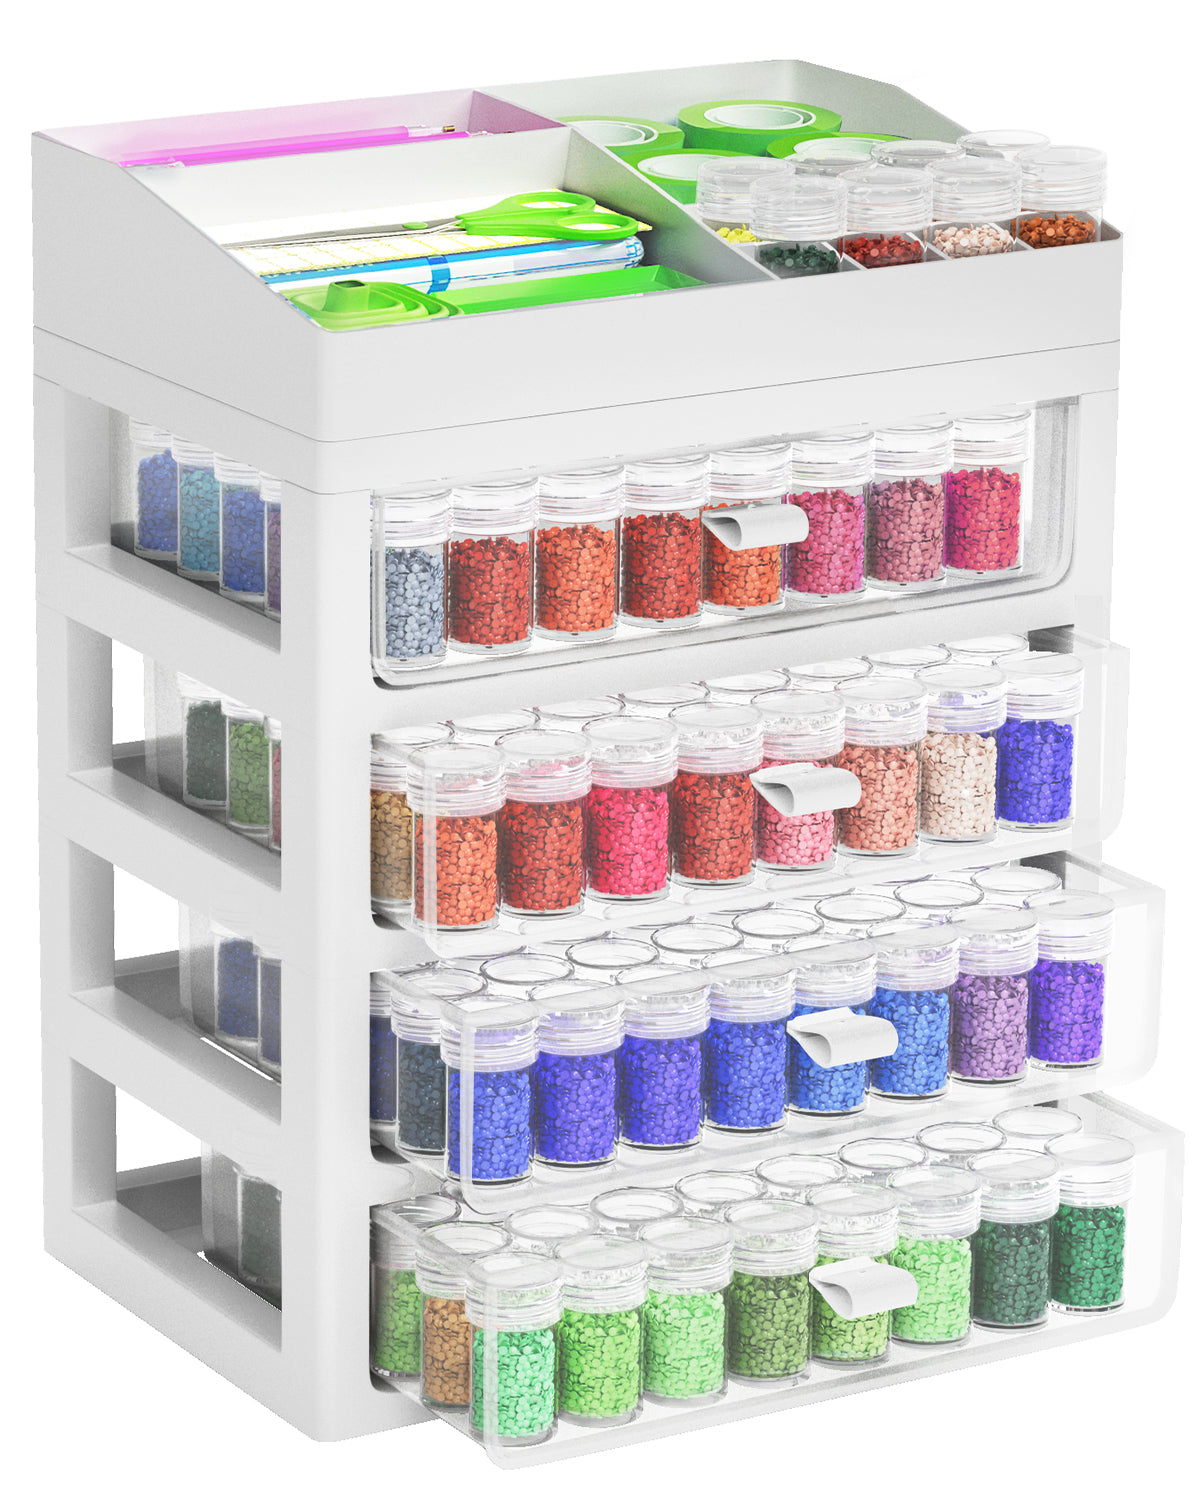 ARTDOT Diamond Painting Storage Containers, Portable Bead Storage Organizer  64 Gird Diamond Painting Accessories (Storage Box)